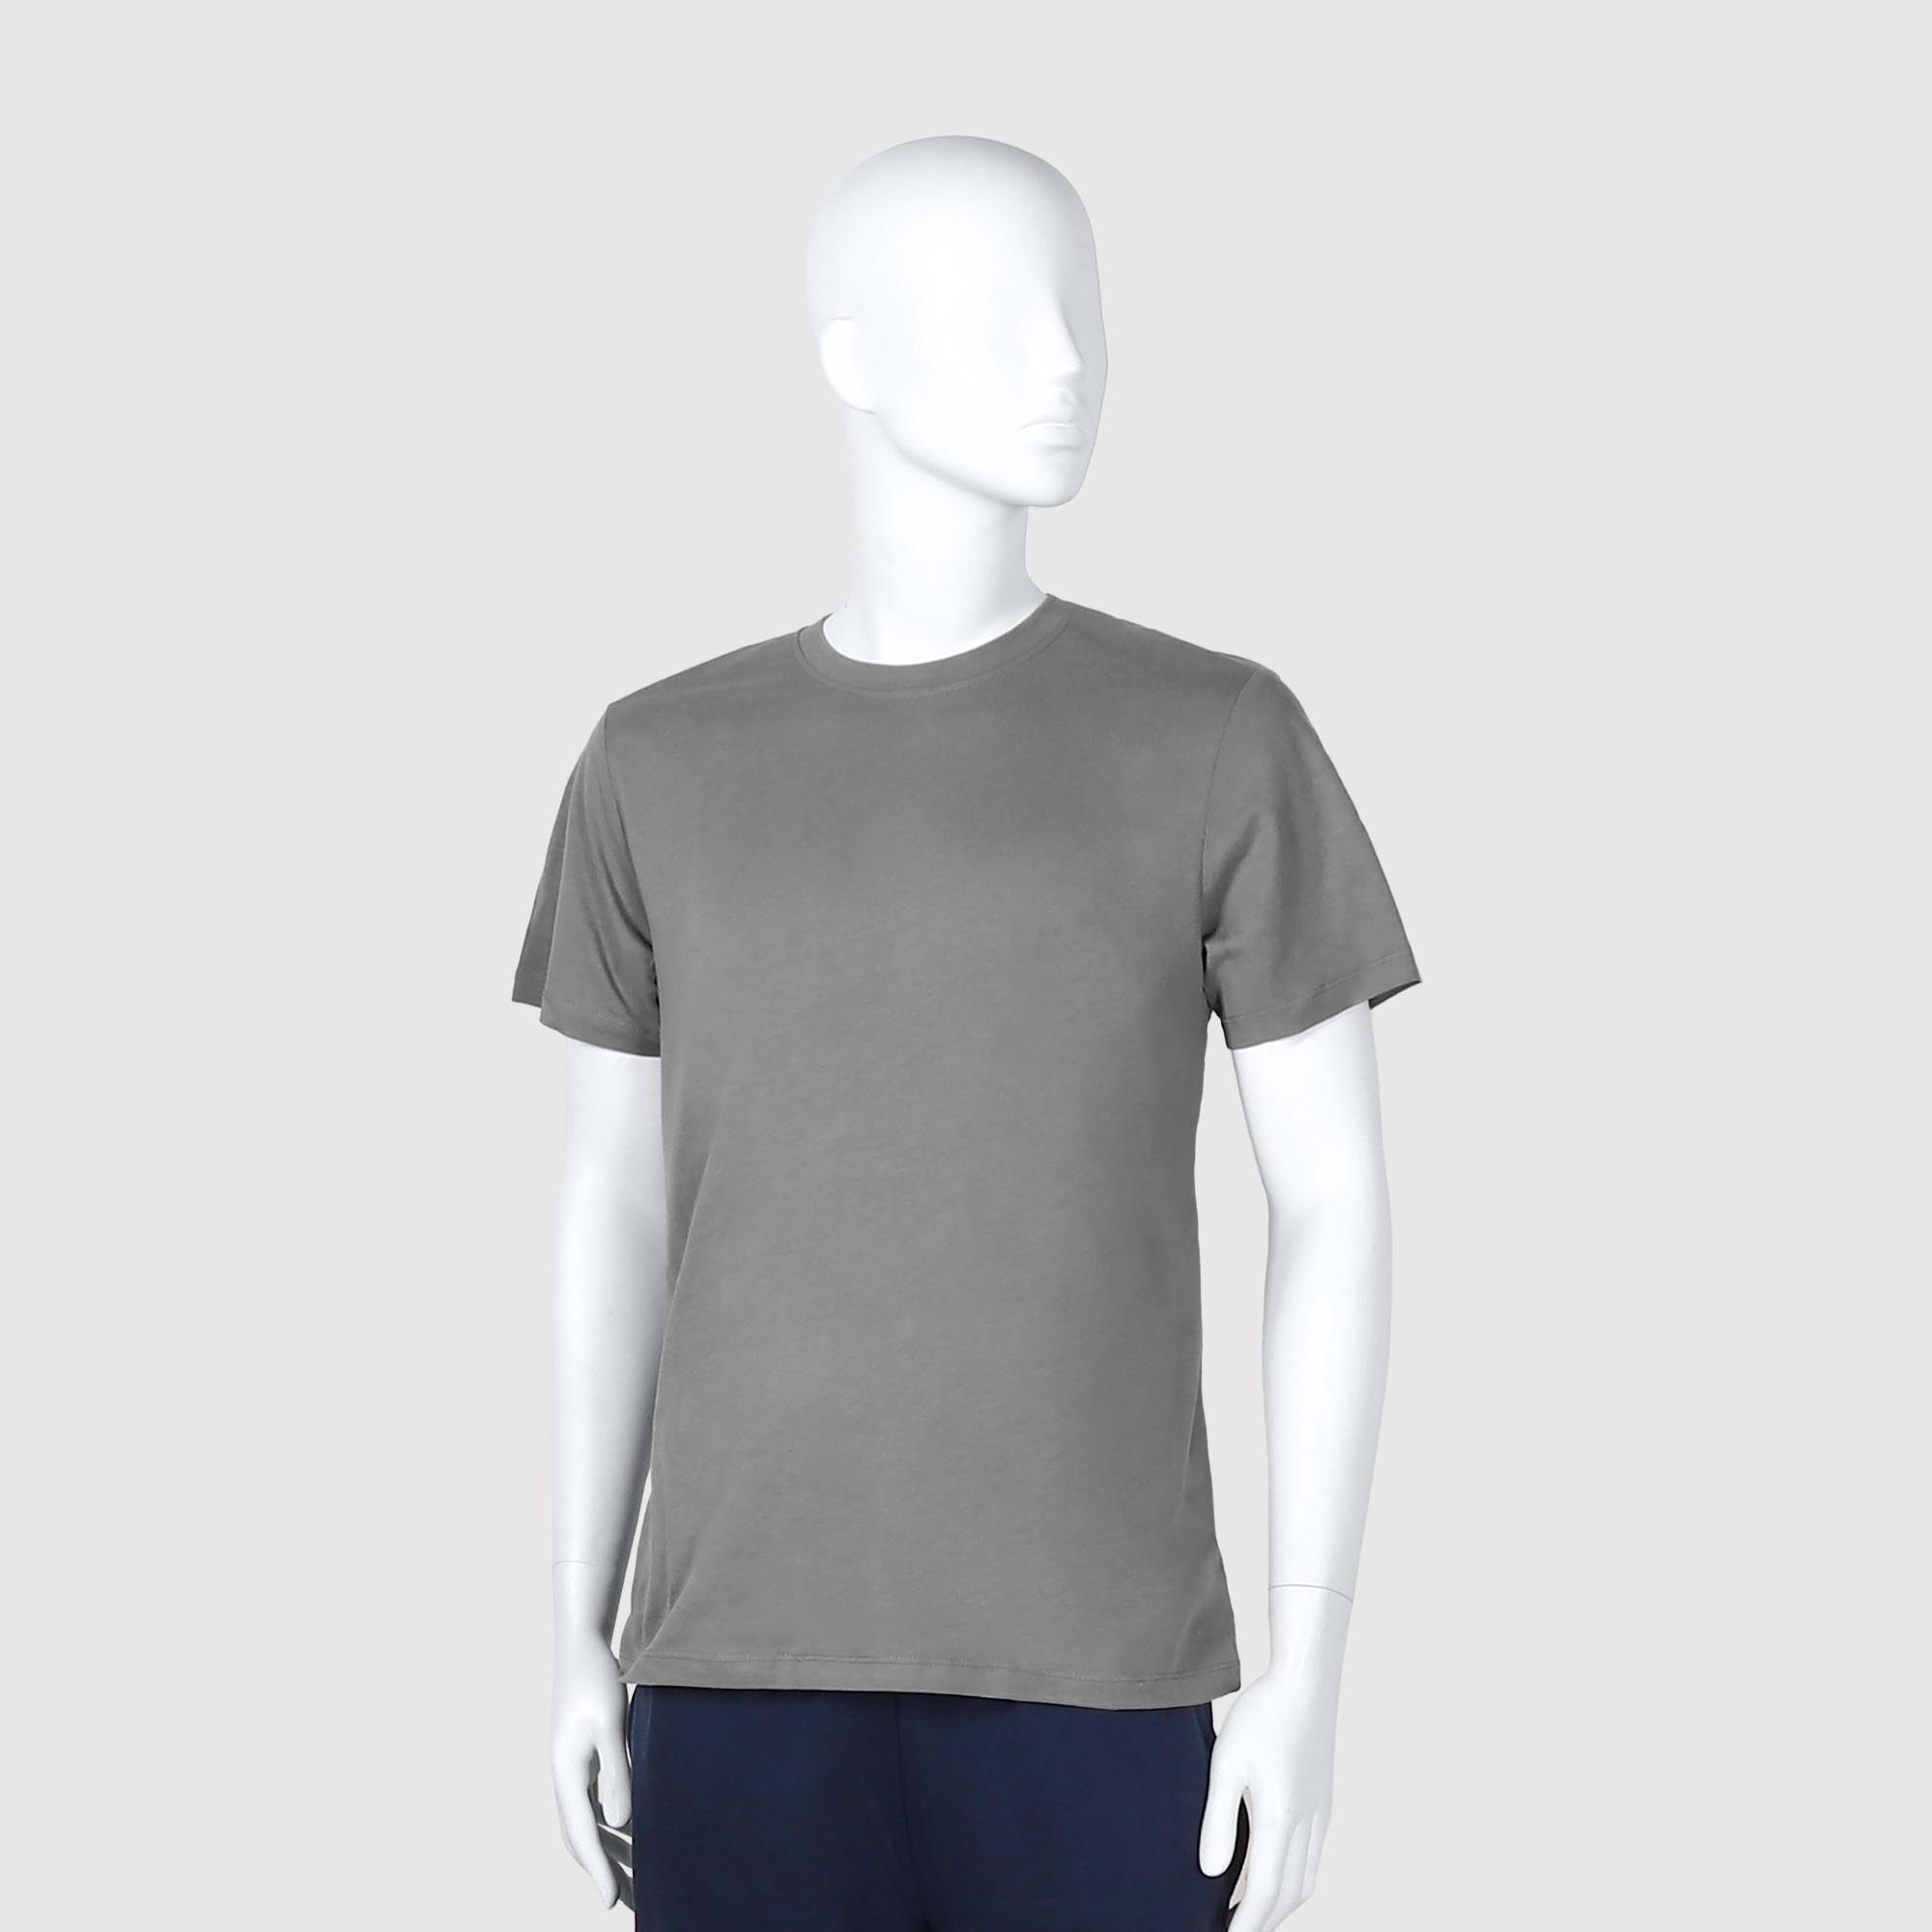 Мужская футболка Diva Teks серая (DTD-04), цвет серый, размер 40-52